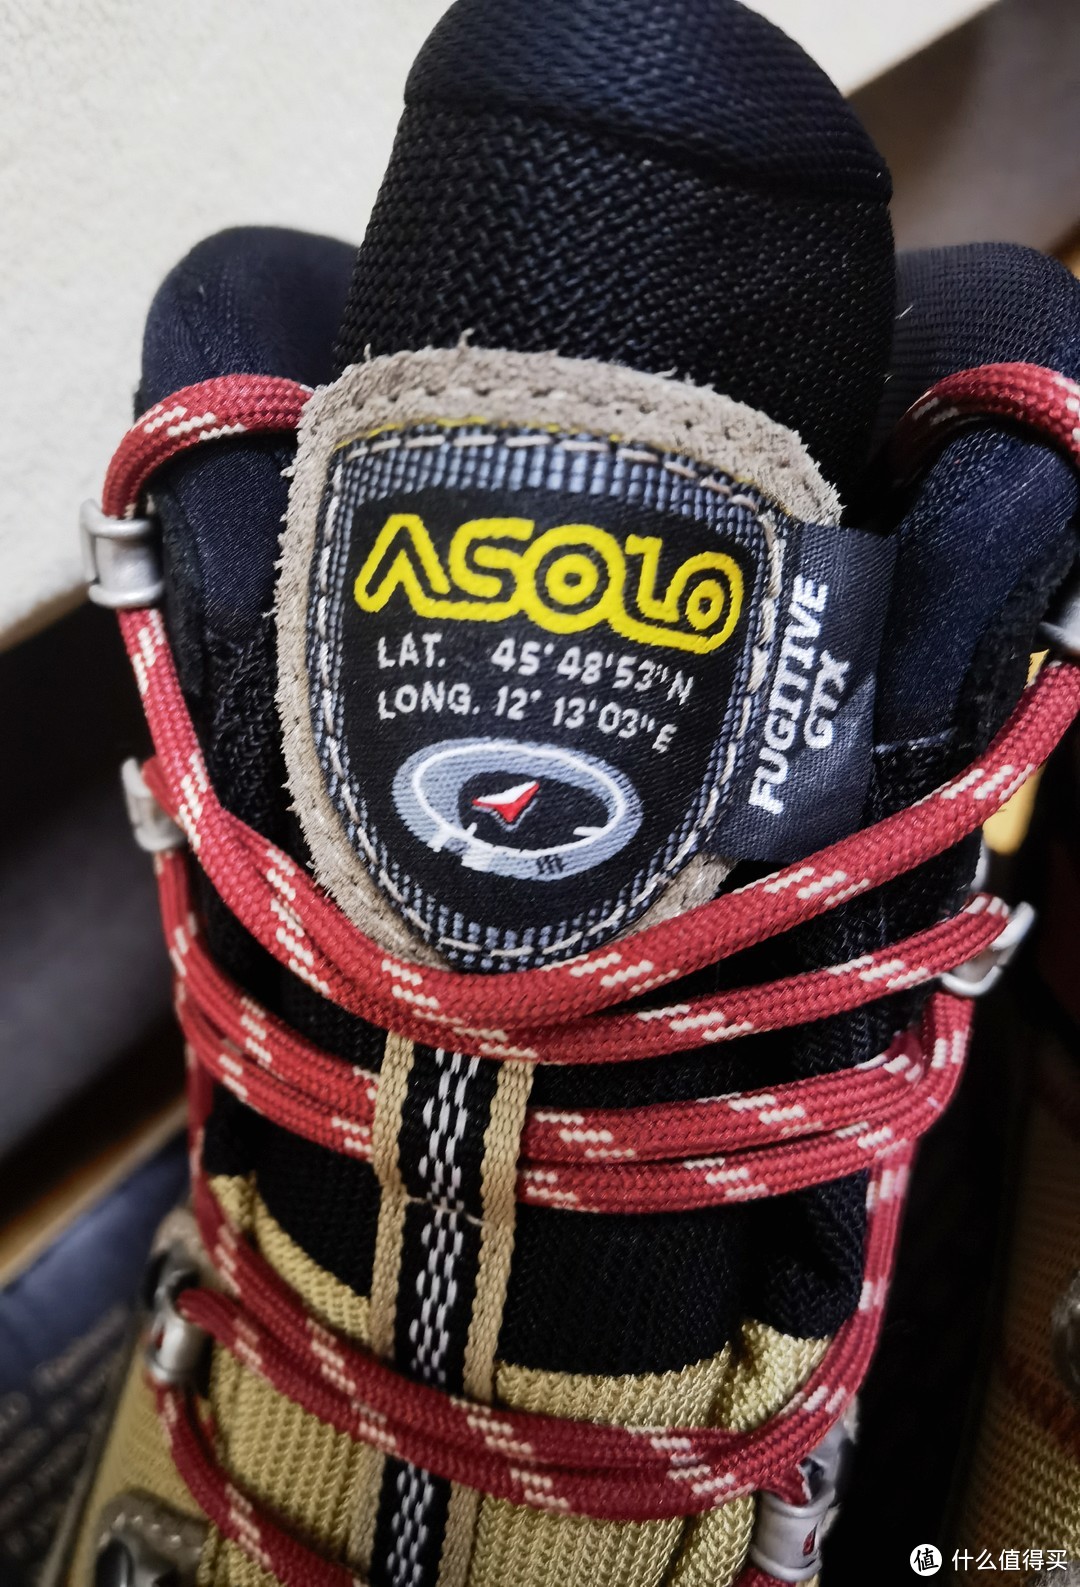 Asolo 鞋舌标注着公司地址坐标